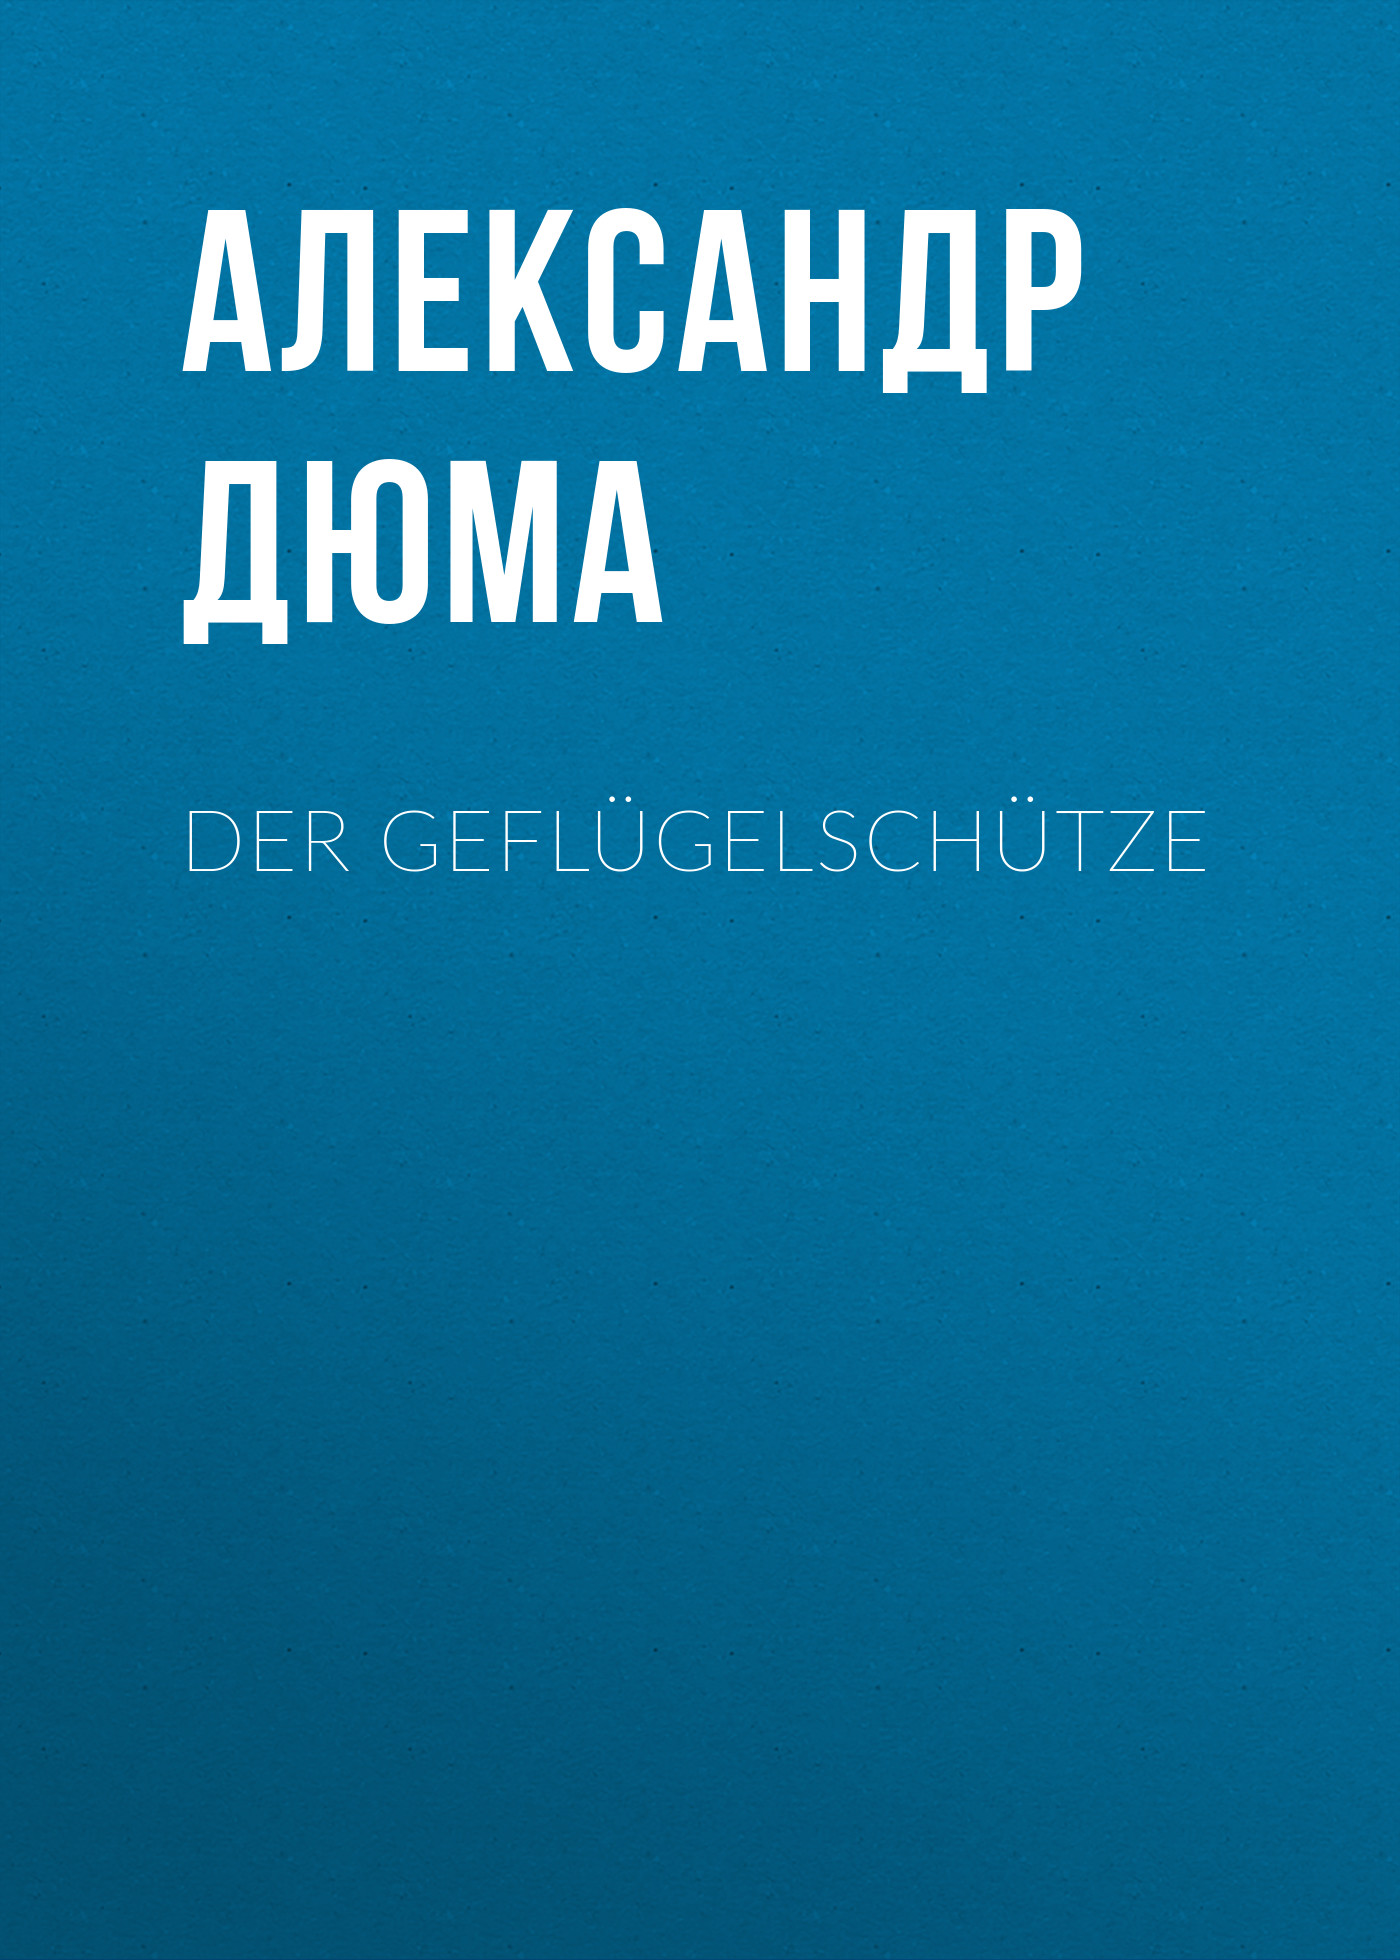 Книга Der Geflügelschütze из серии , созданная Alexandre Dumas der Ältere, может относится к жанру Зарубежная классика. Стоимость электронной книги Der Geflügelschütze с идентификатором 48632444 составляет 0 руб.